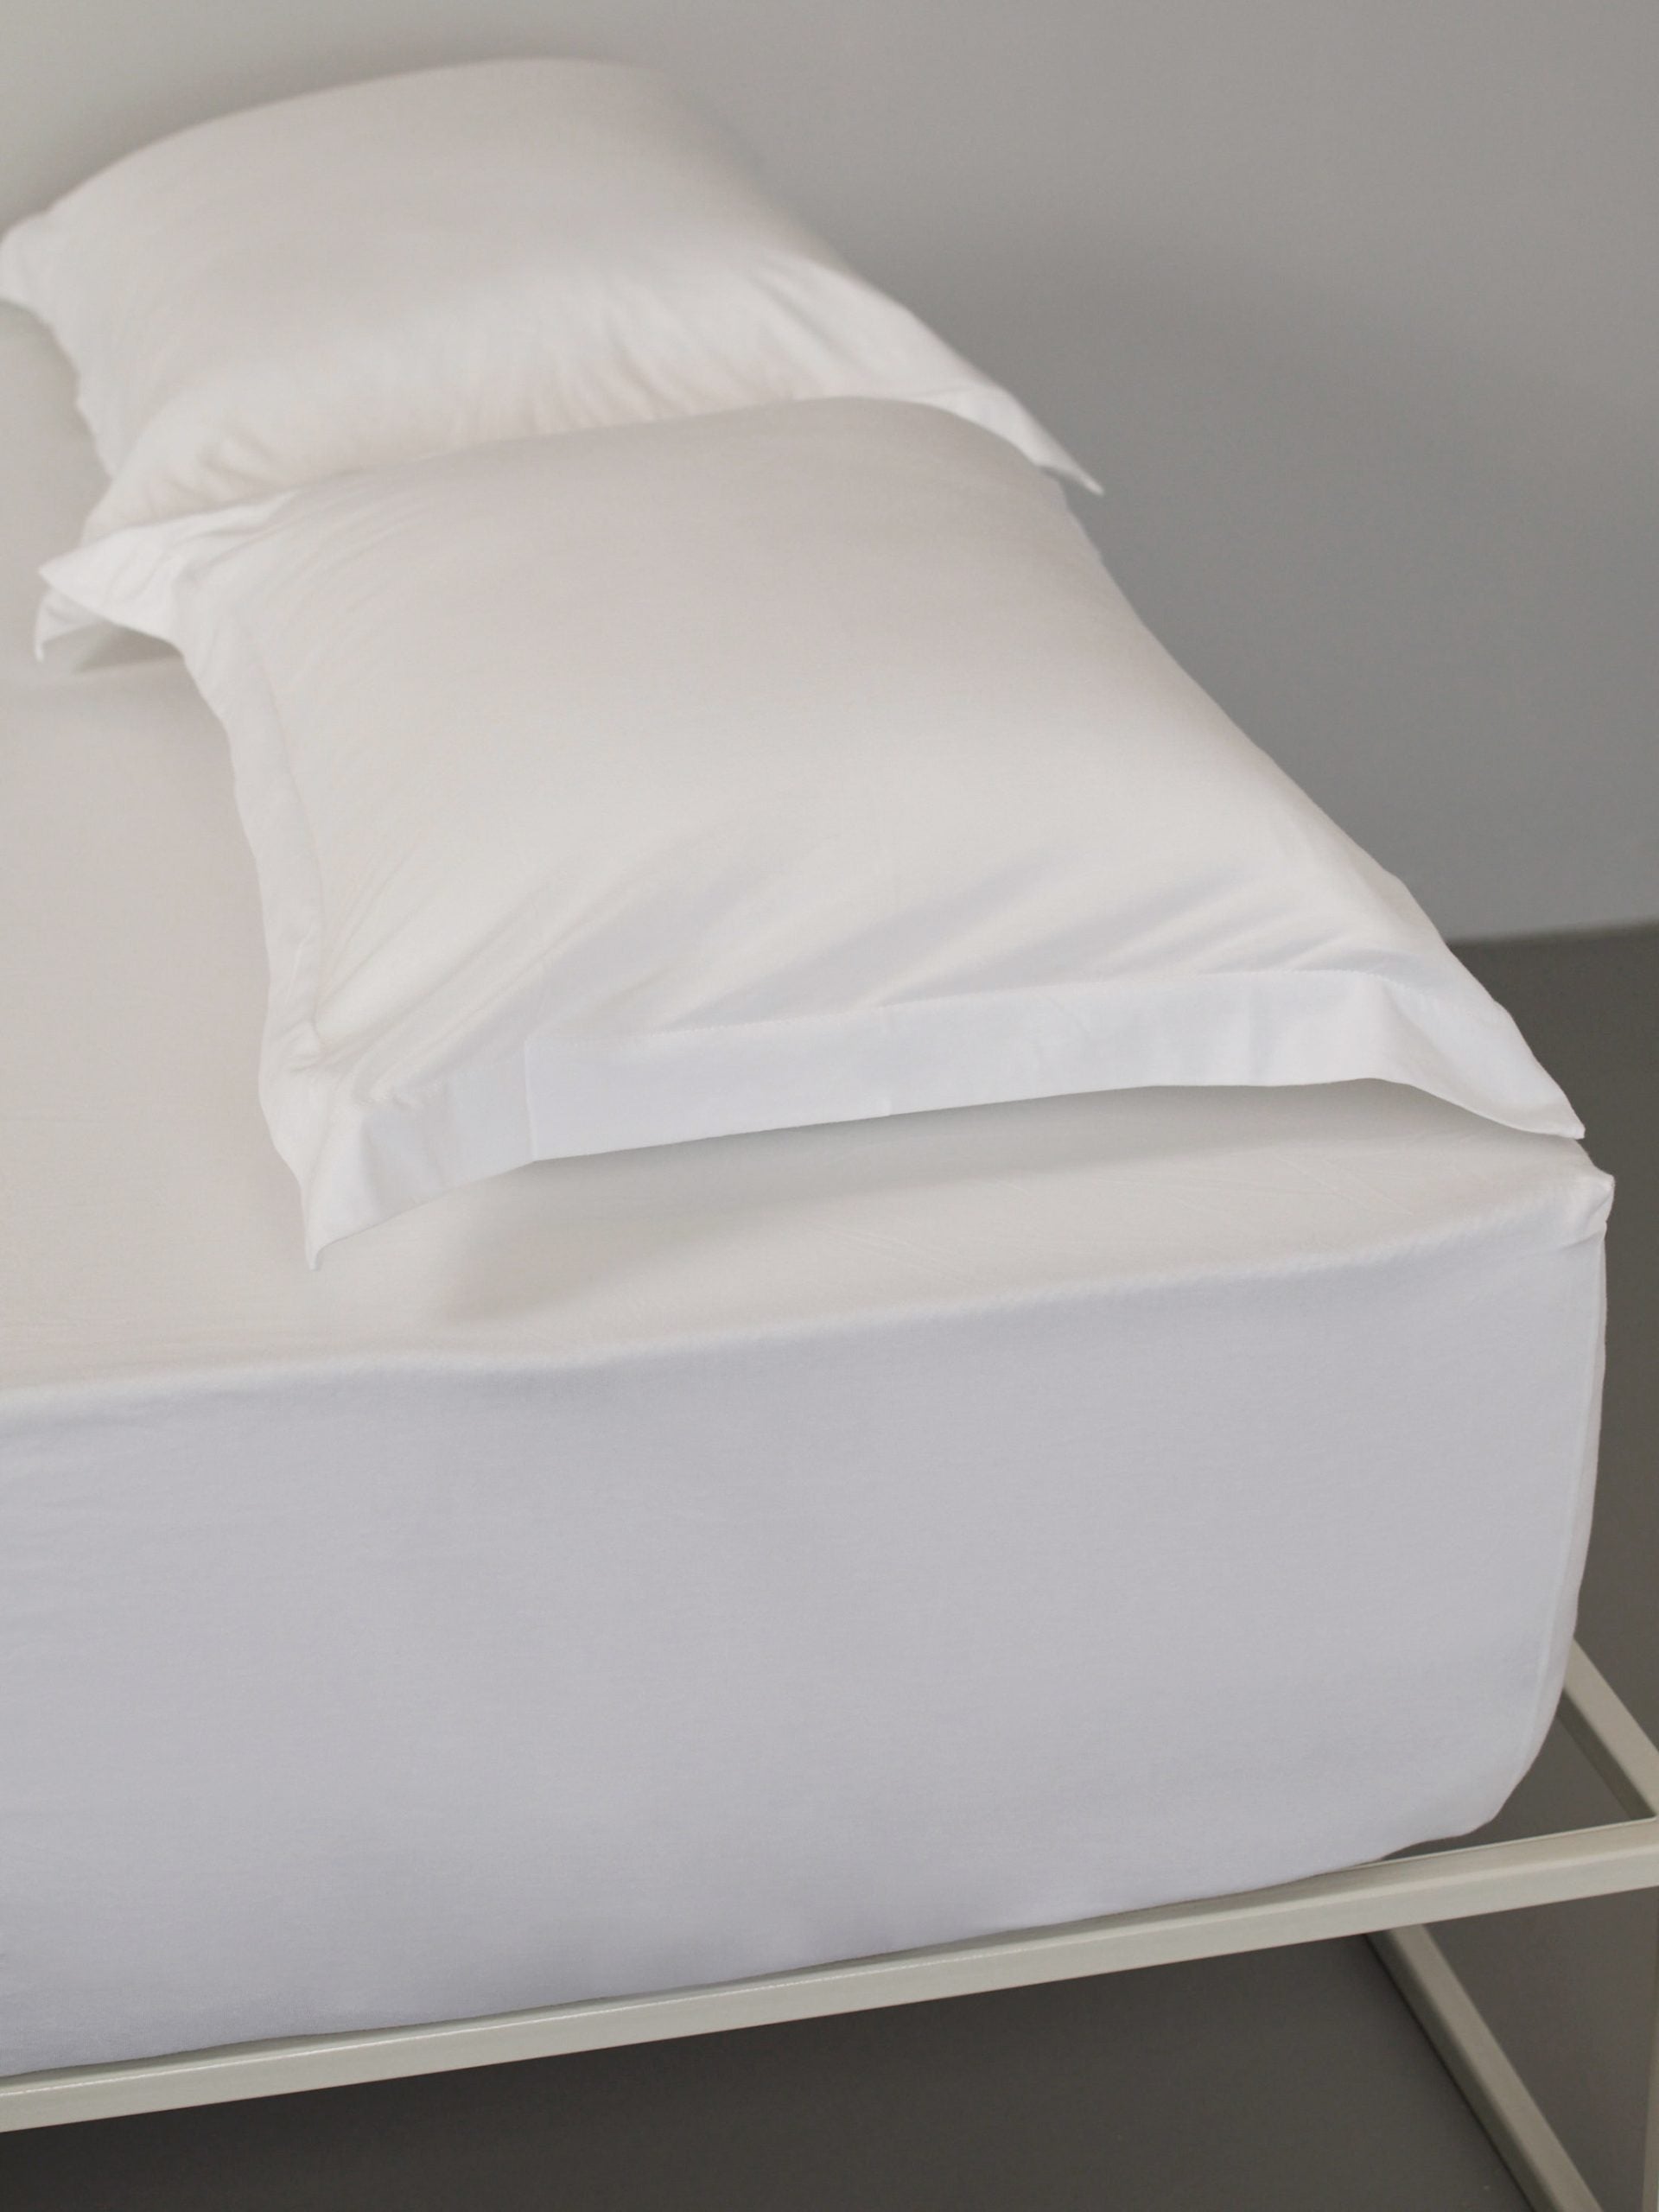 ראש מיטת ברזל לבנה עם סט מצעים וכריות עם ציפיות לכריות בצבע לבן